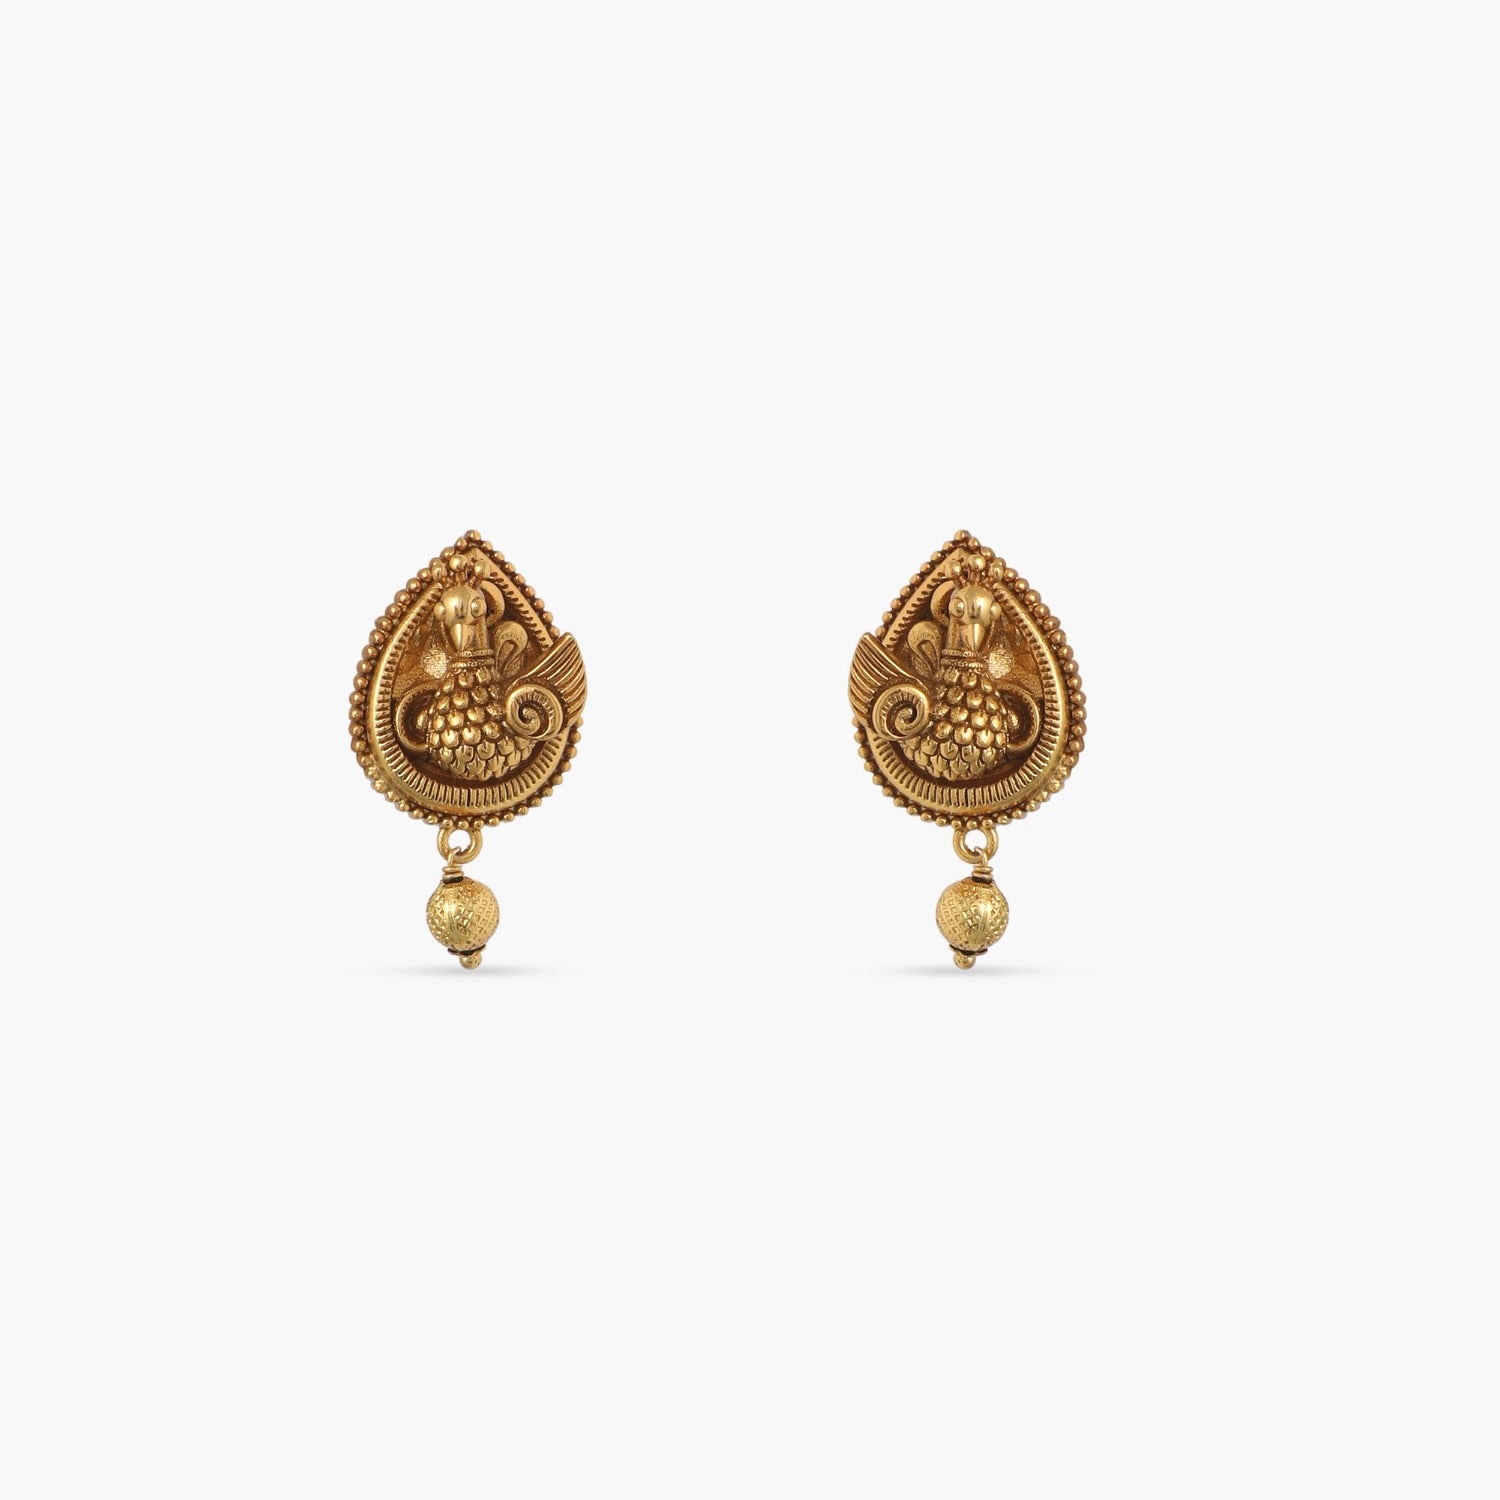 Earrings: Buy Handcrafted Earring for Women & Girls Online in India - Aachho